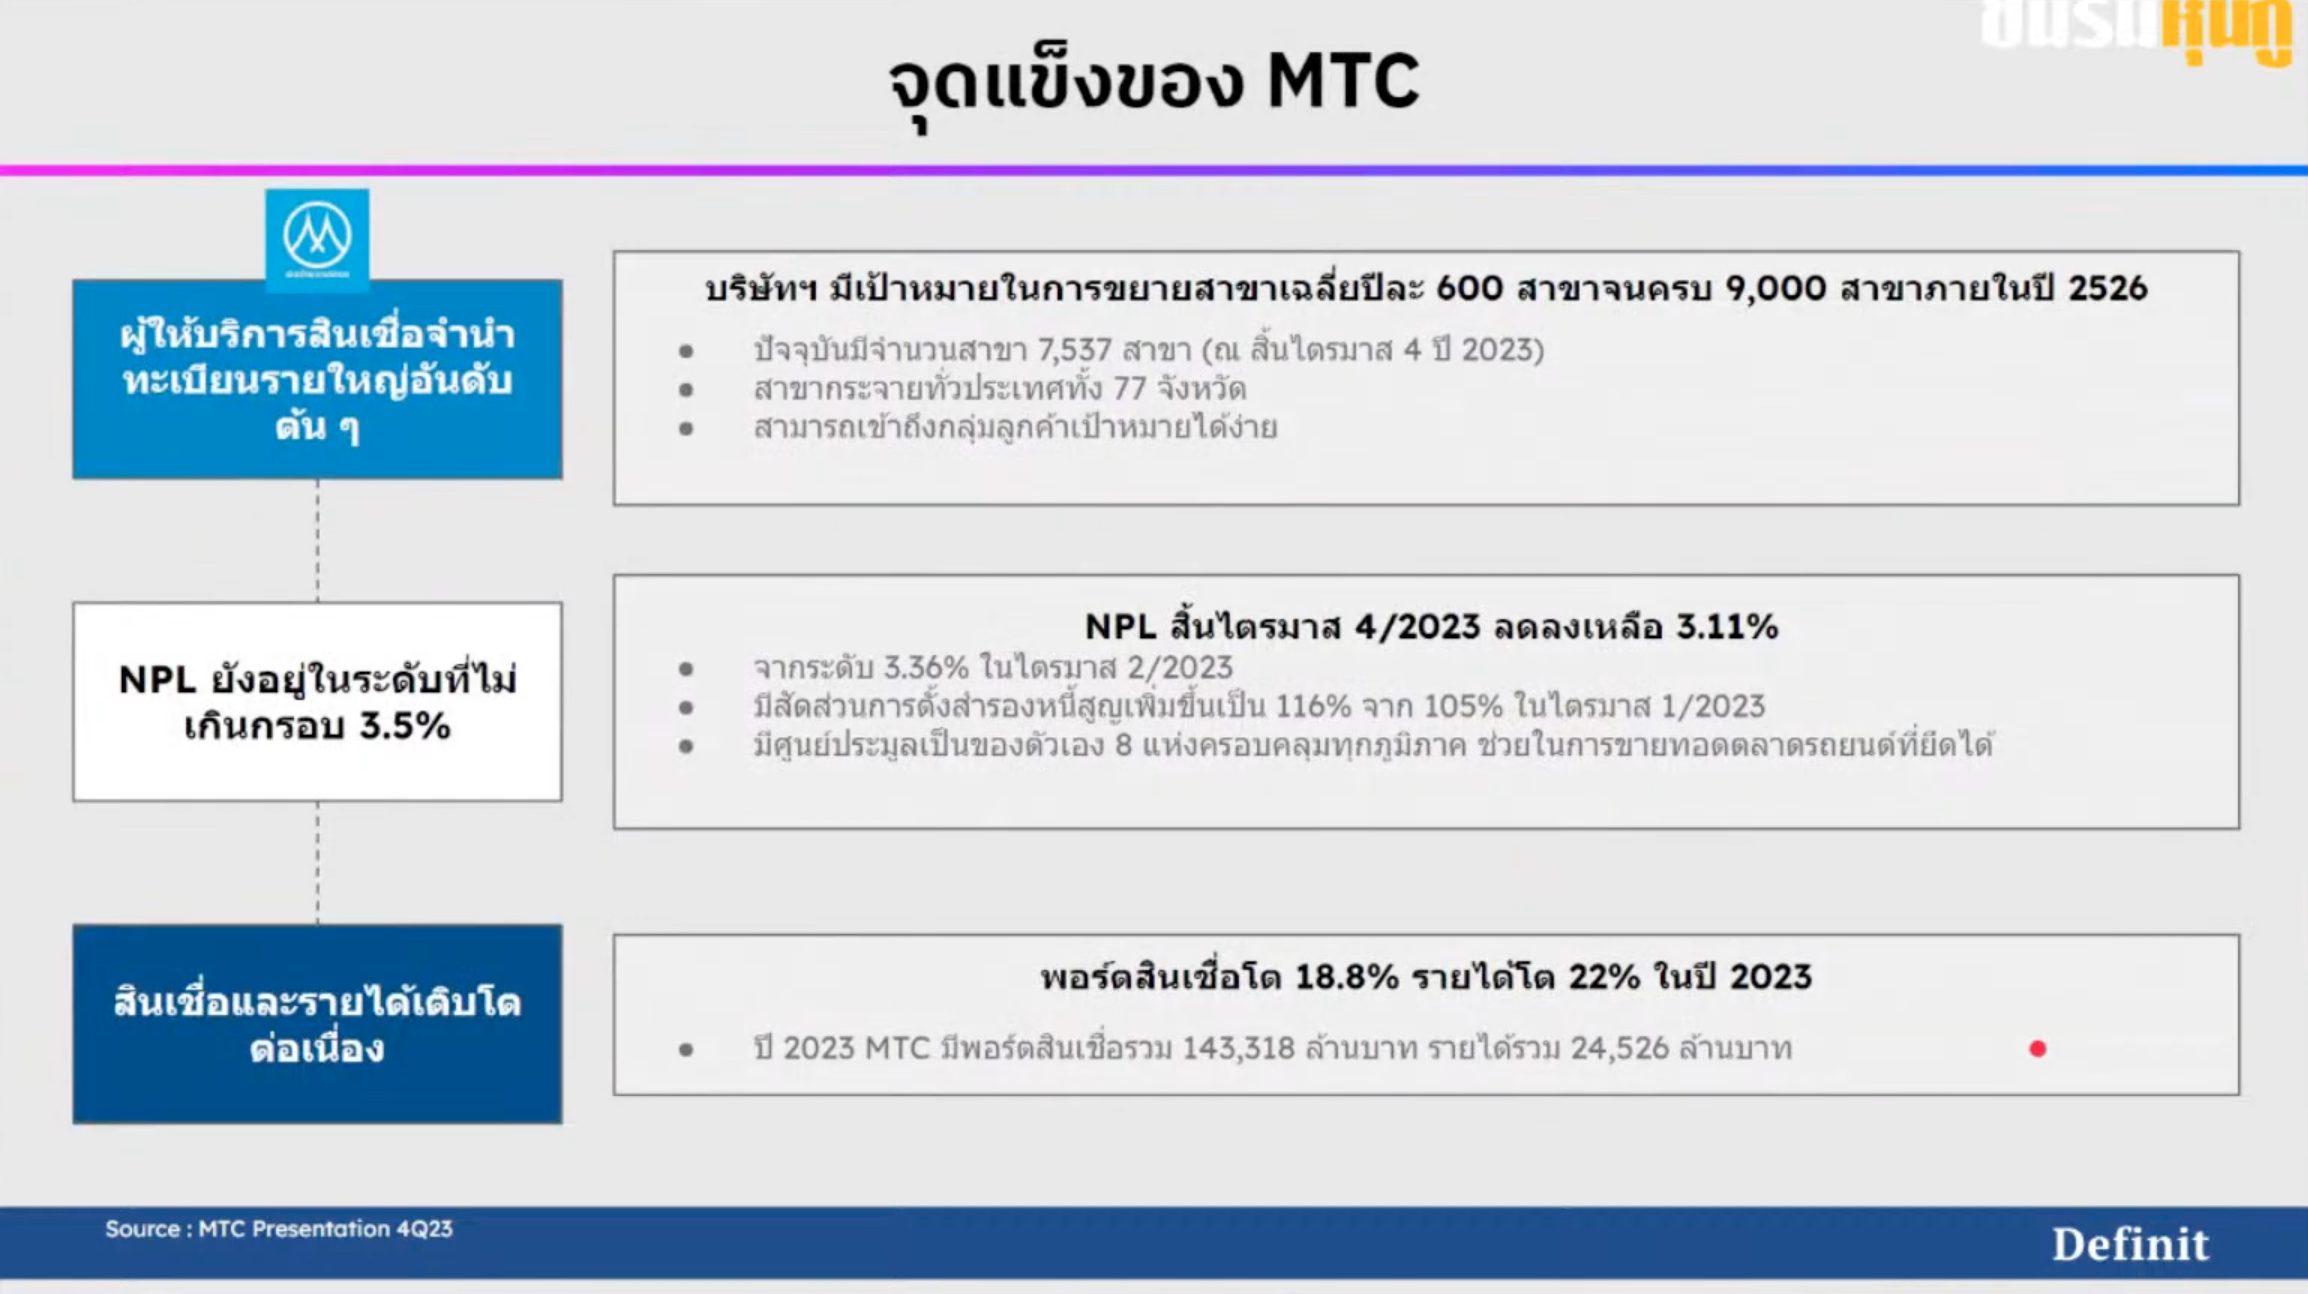 เจาะลึก “หุ้นกู้” ออกใหม่ MTC จ่ายดอกเบี้ยสูงสุด 4.95% ต่อปี น่าลงทุนไหม?